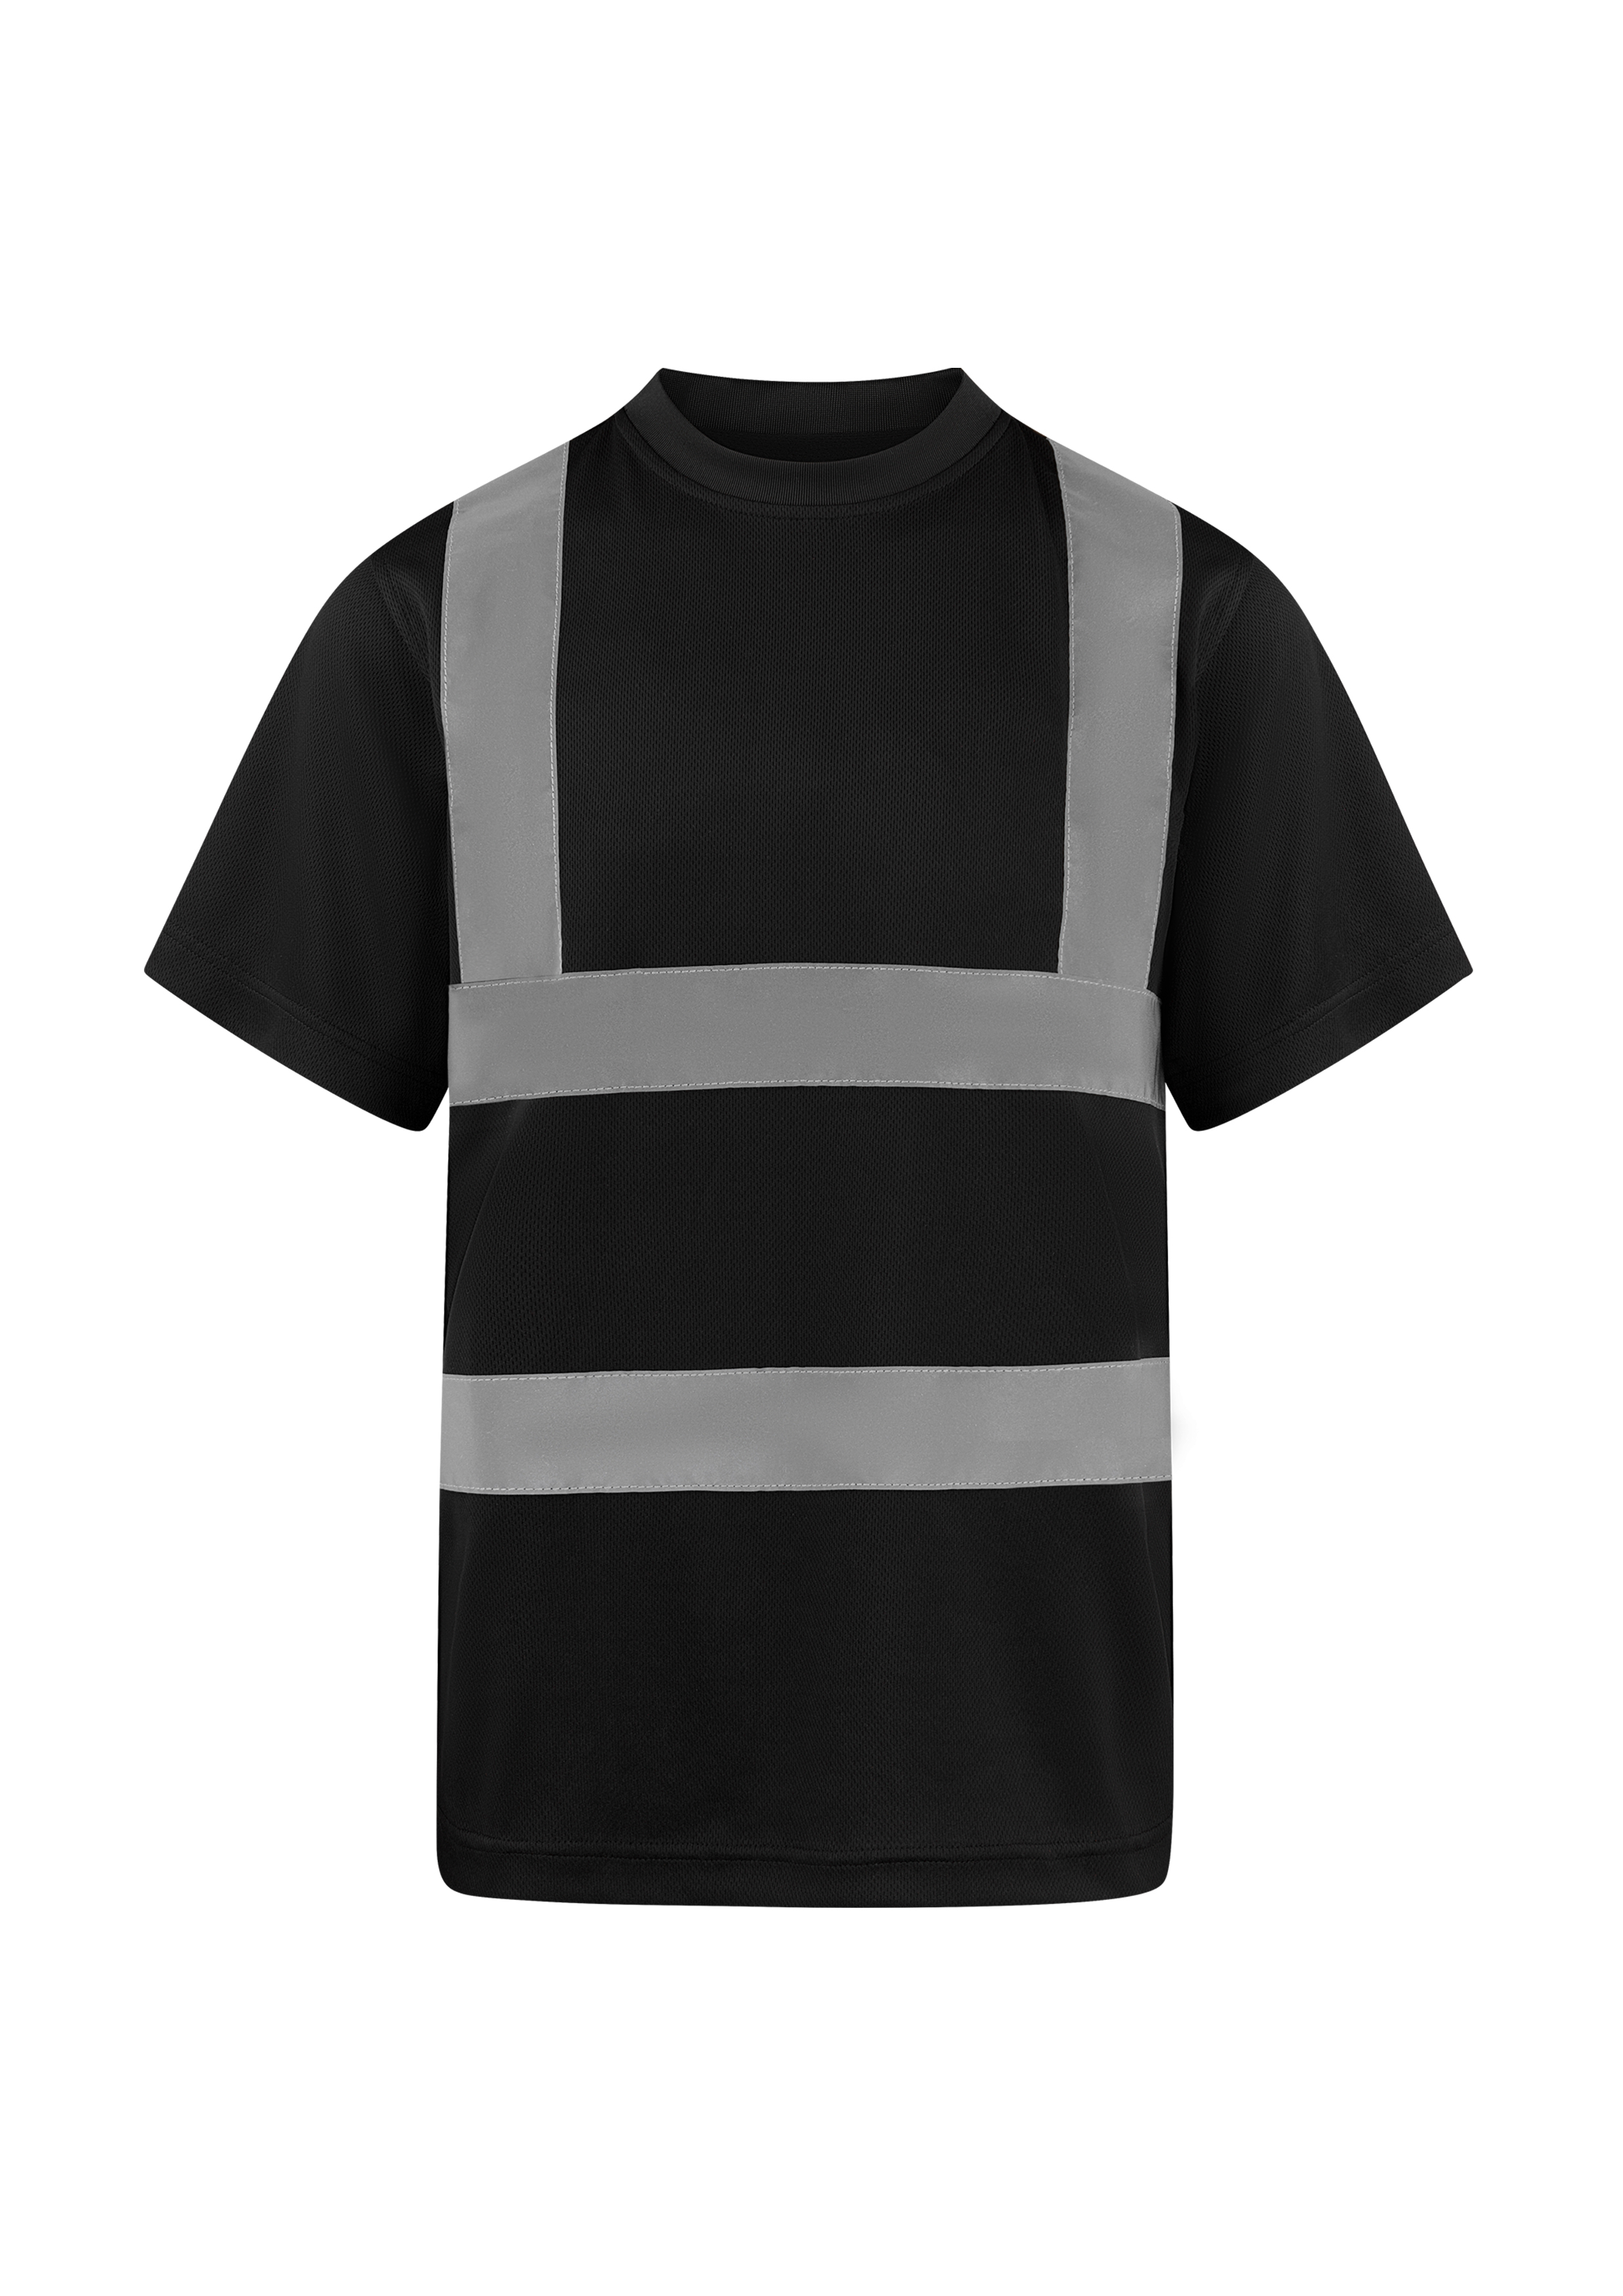 Tričko s krátkým rukávem Korntex Hi-Vis Basic T-Shirt Cordoba